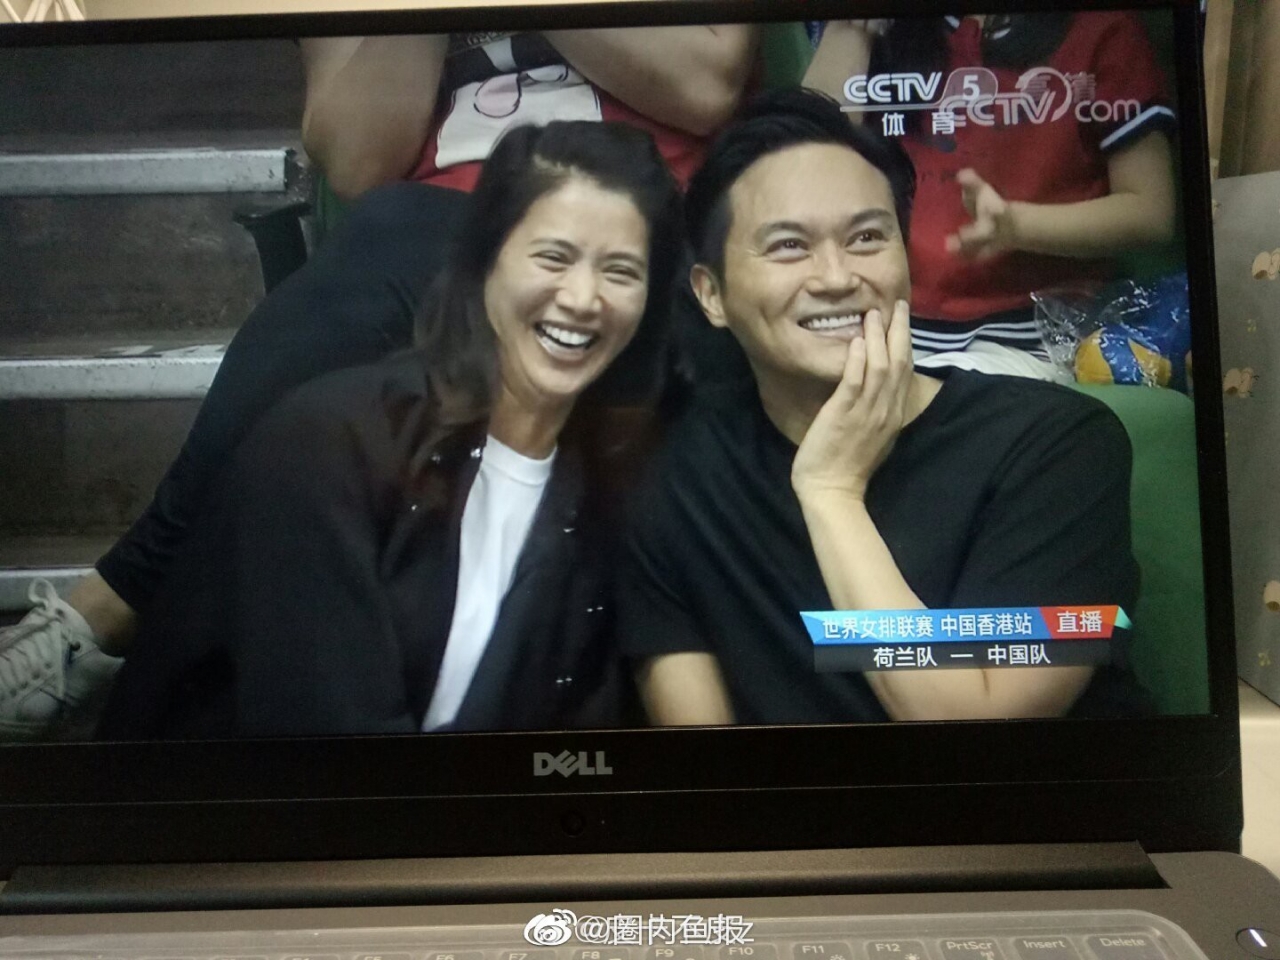  Viên Vịnh Nghi và Trương Trí Lâm nhắng nhít bên nhau khi cùng đi xem bóng chuyền.